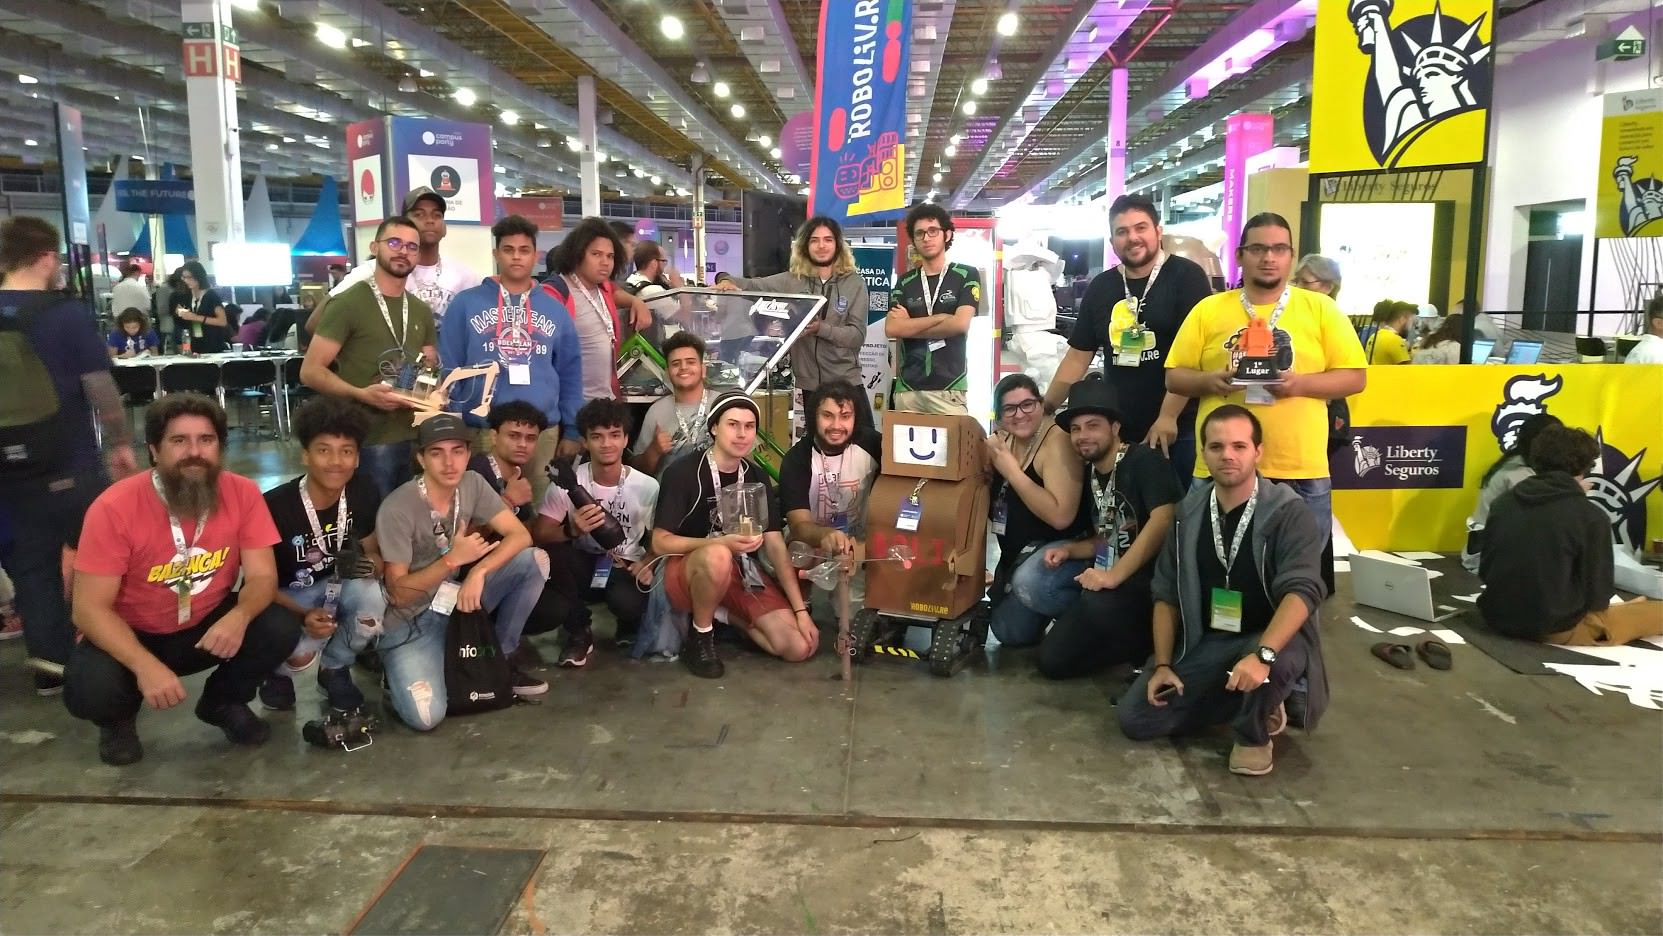  Participantes e jurados do Concurso “Leve seu robô” 